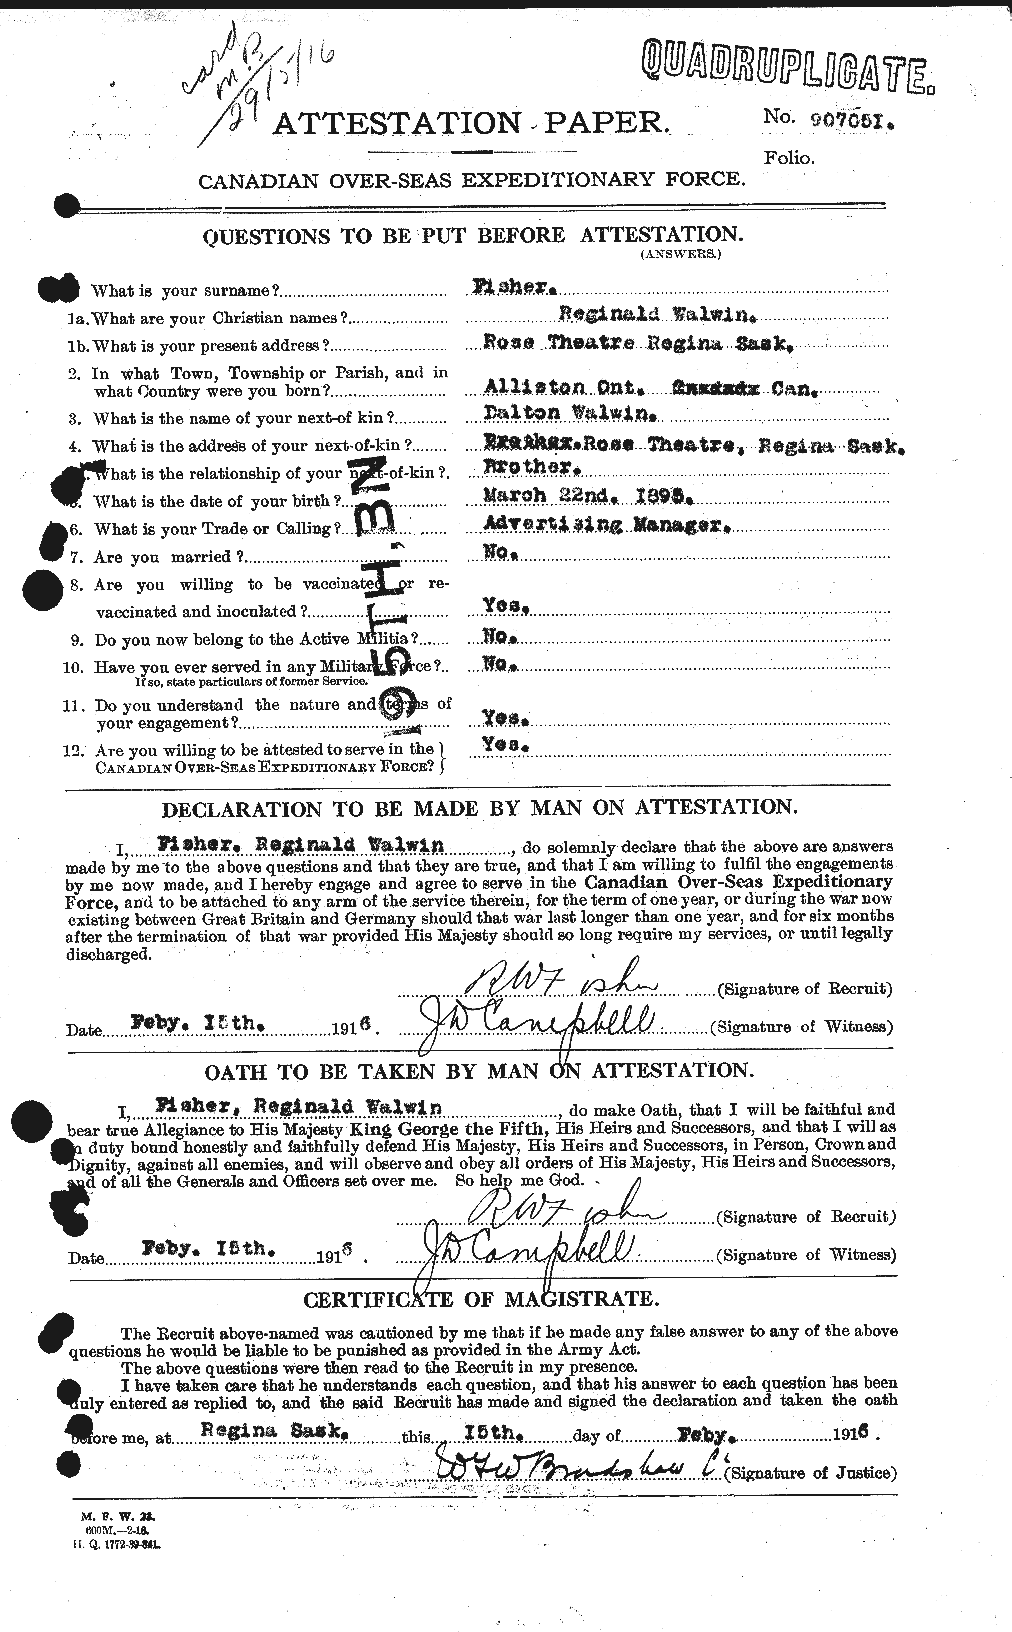 Dossiers du Personnel de la Première Guerre mondiale - CEC 327238a